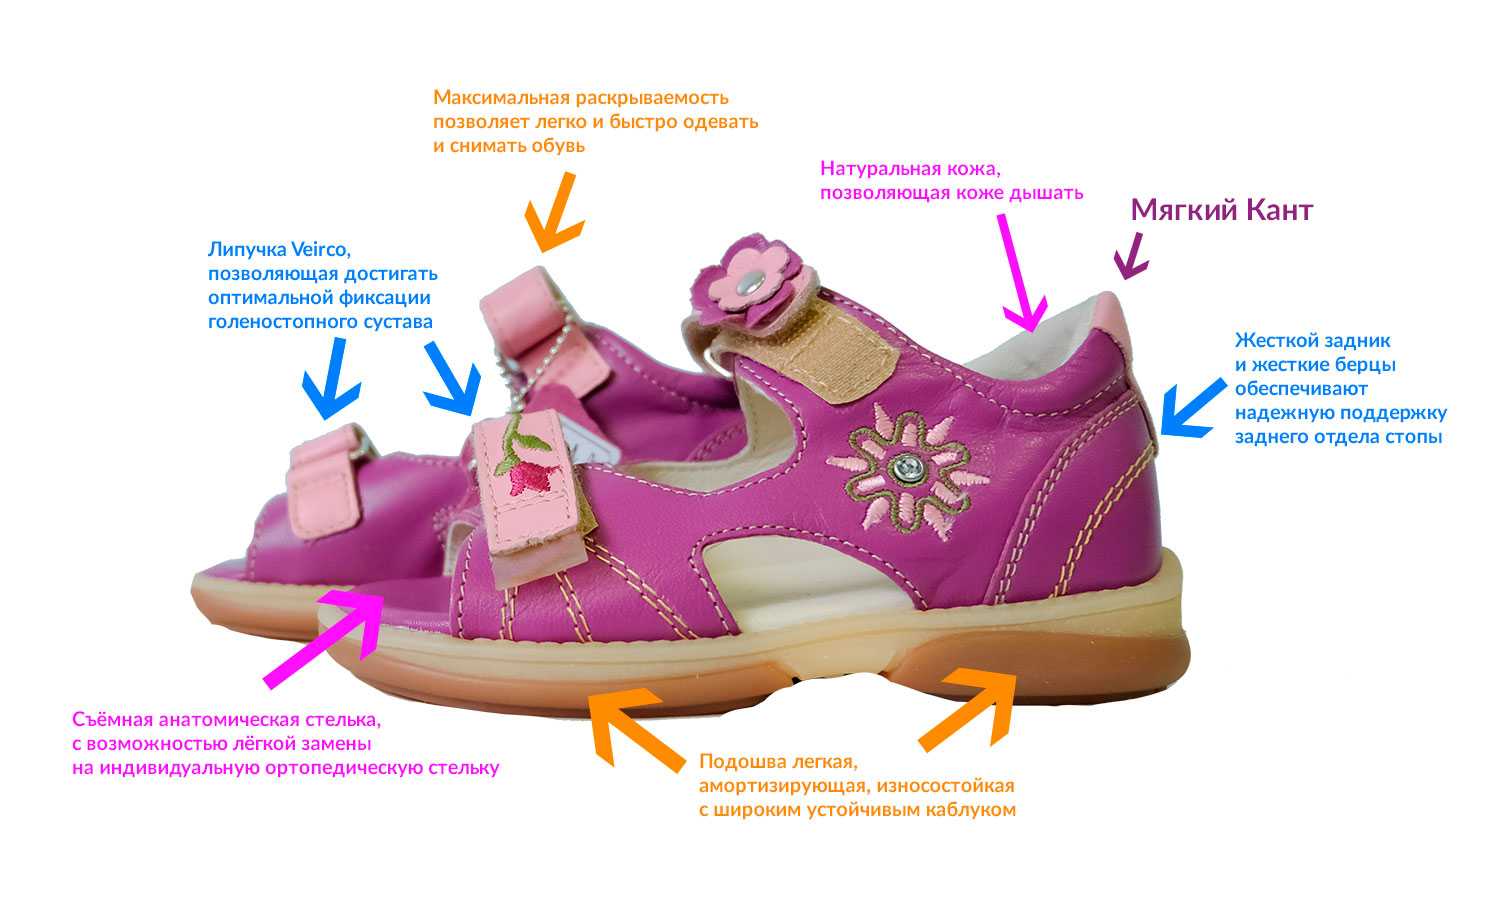 Хорошая детская обувь фирмы. Правильная обувь для детей. Детская ортопедическая обувь. Правильная ортопедическая обувь. Ортопедические обув для детей.